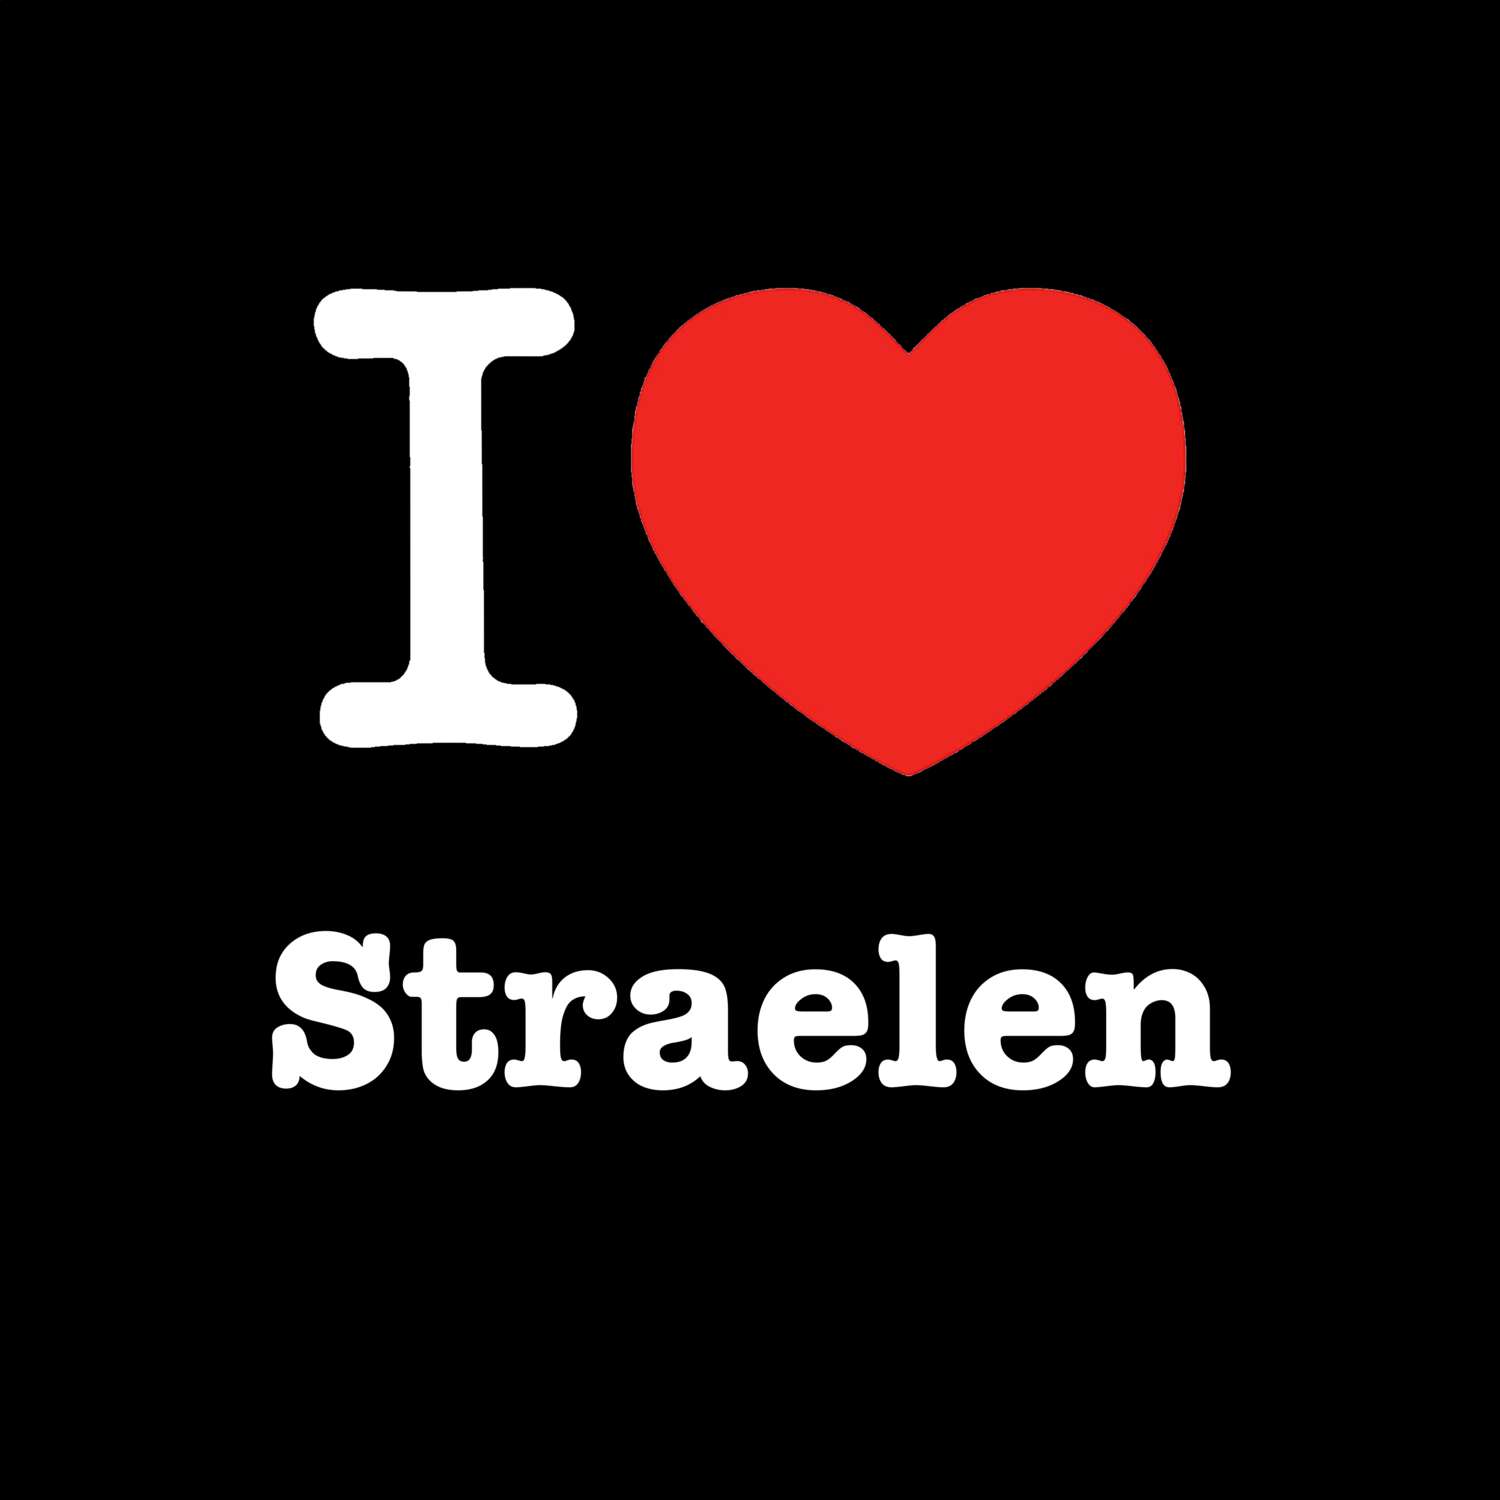 Straelen T-Shirt »I love«